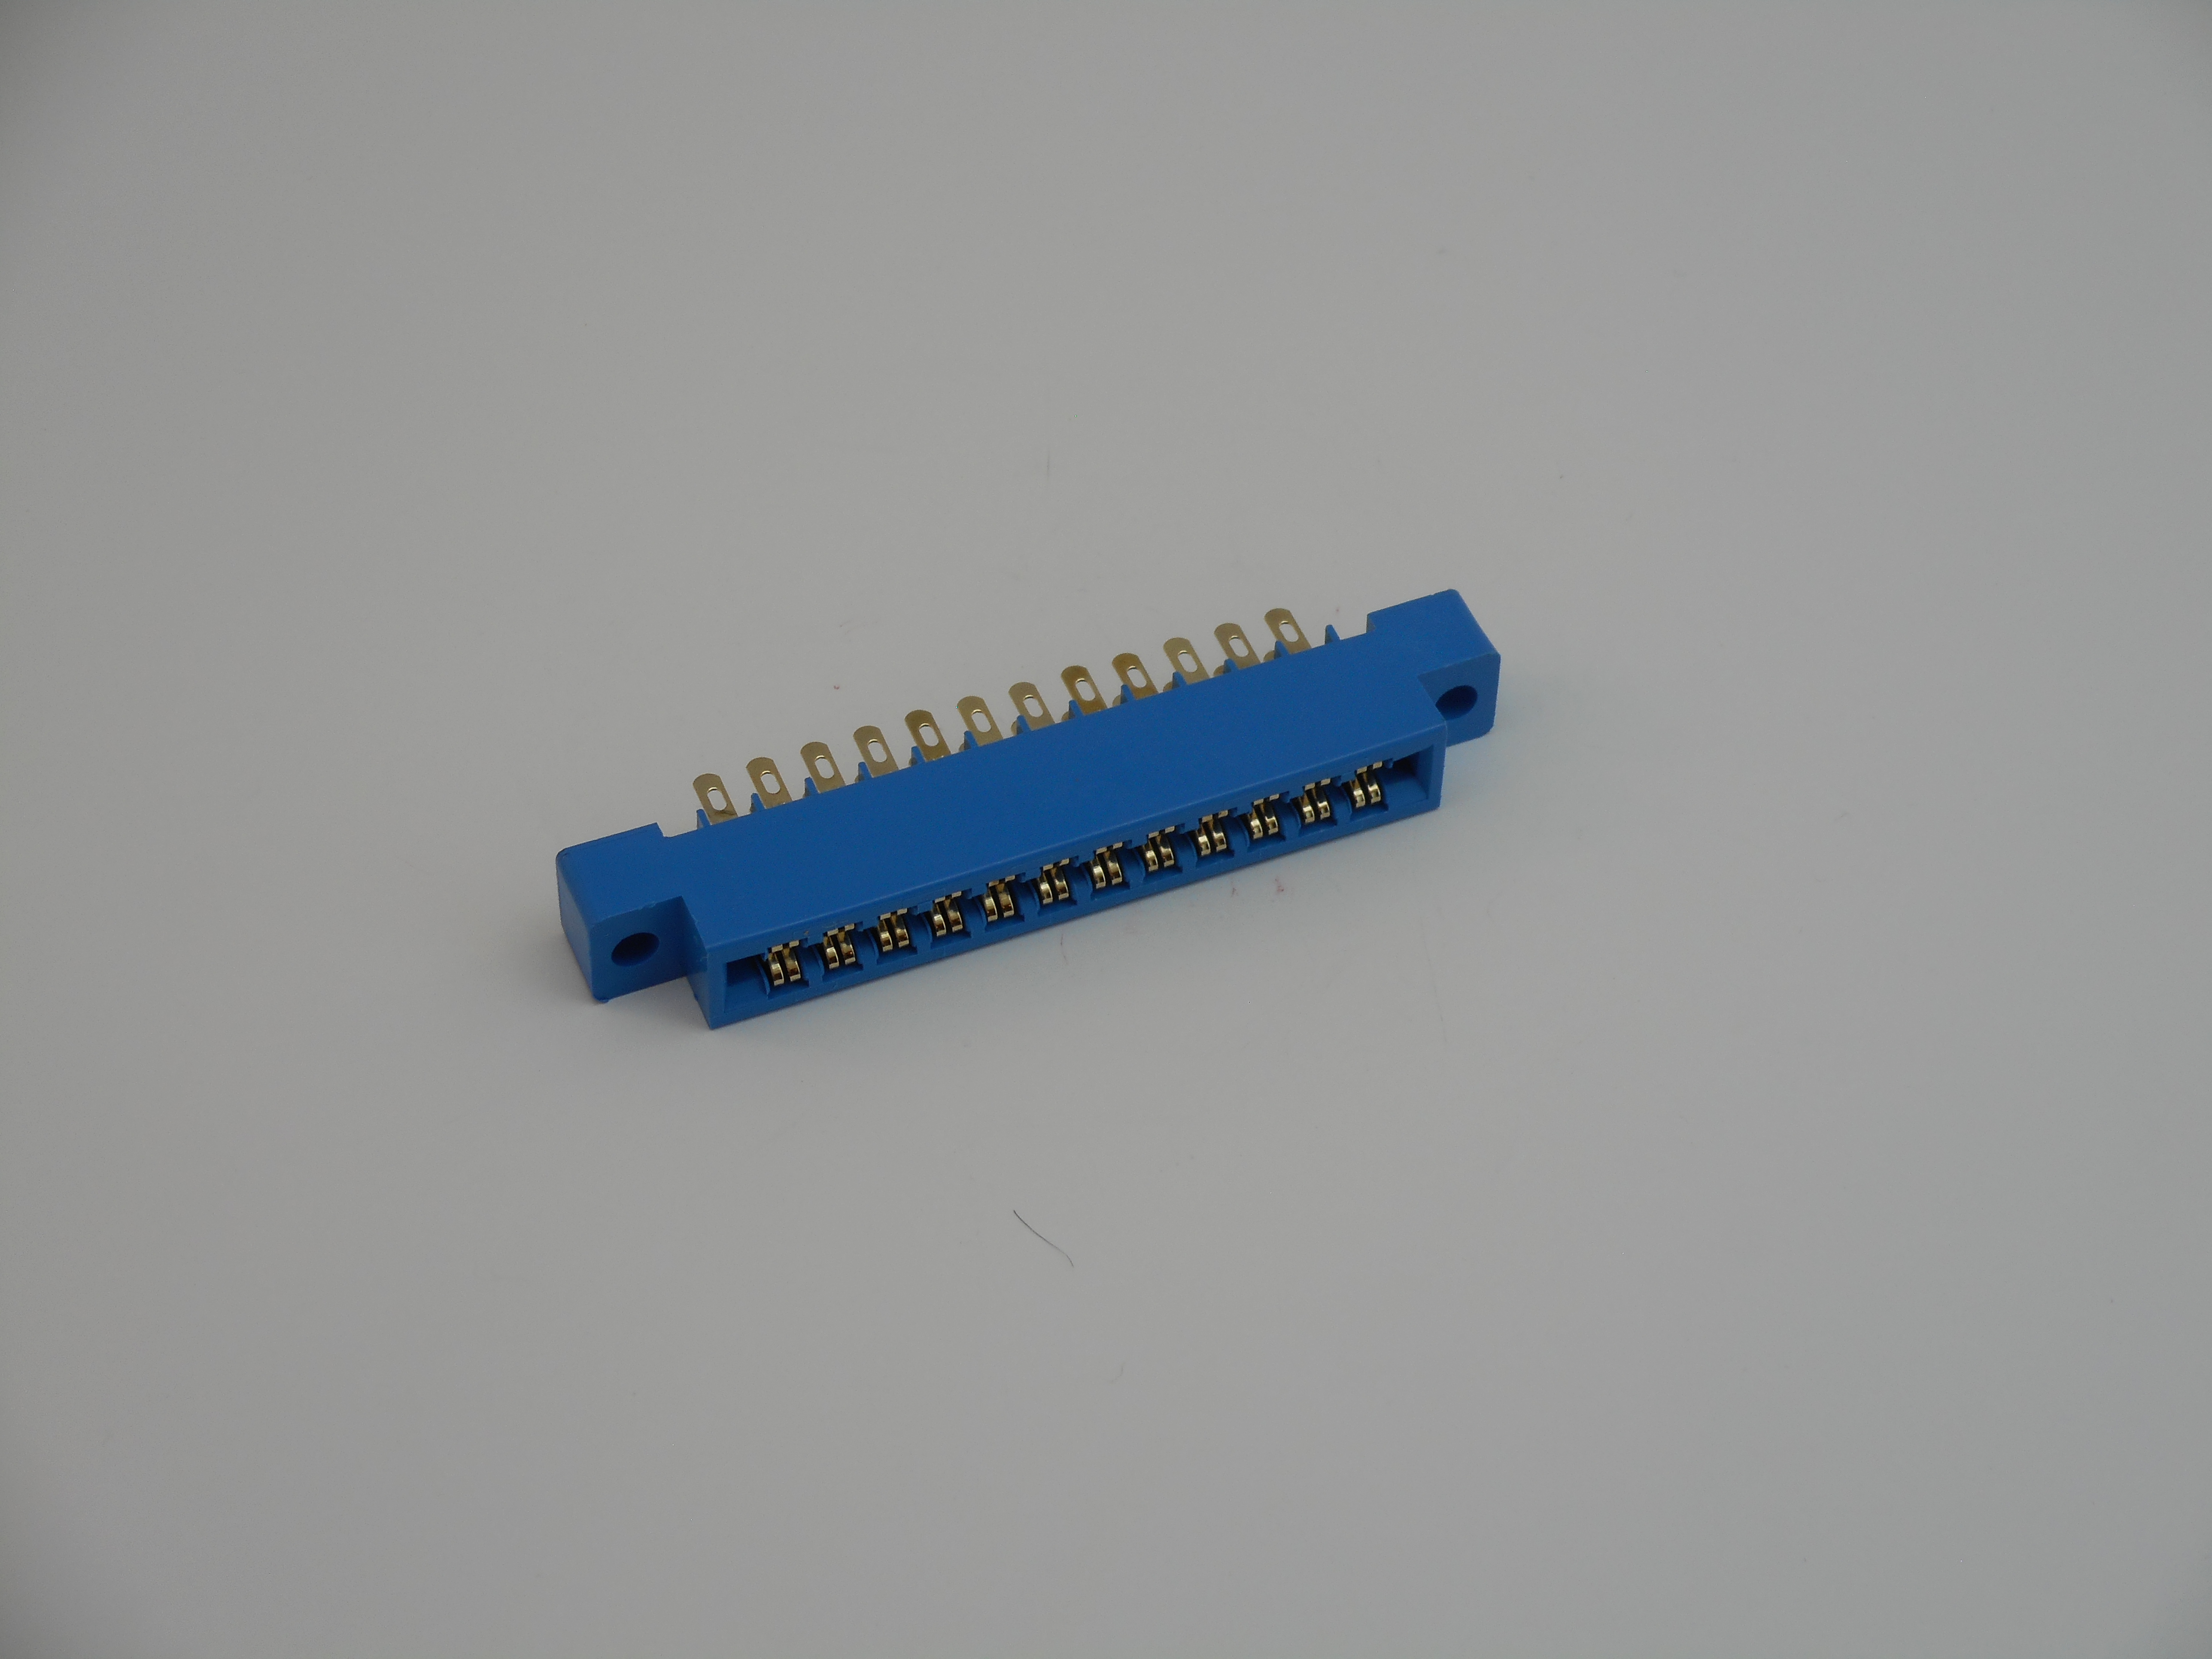 24 pin edge connector